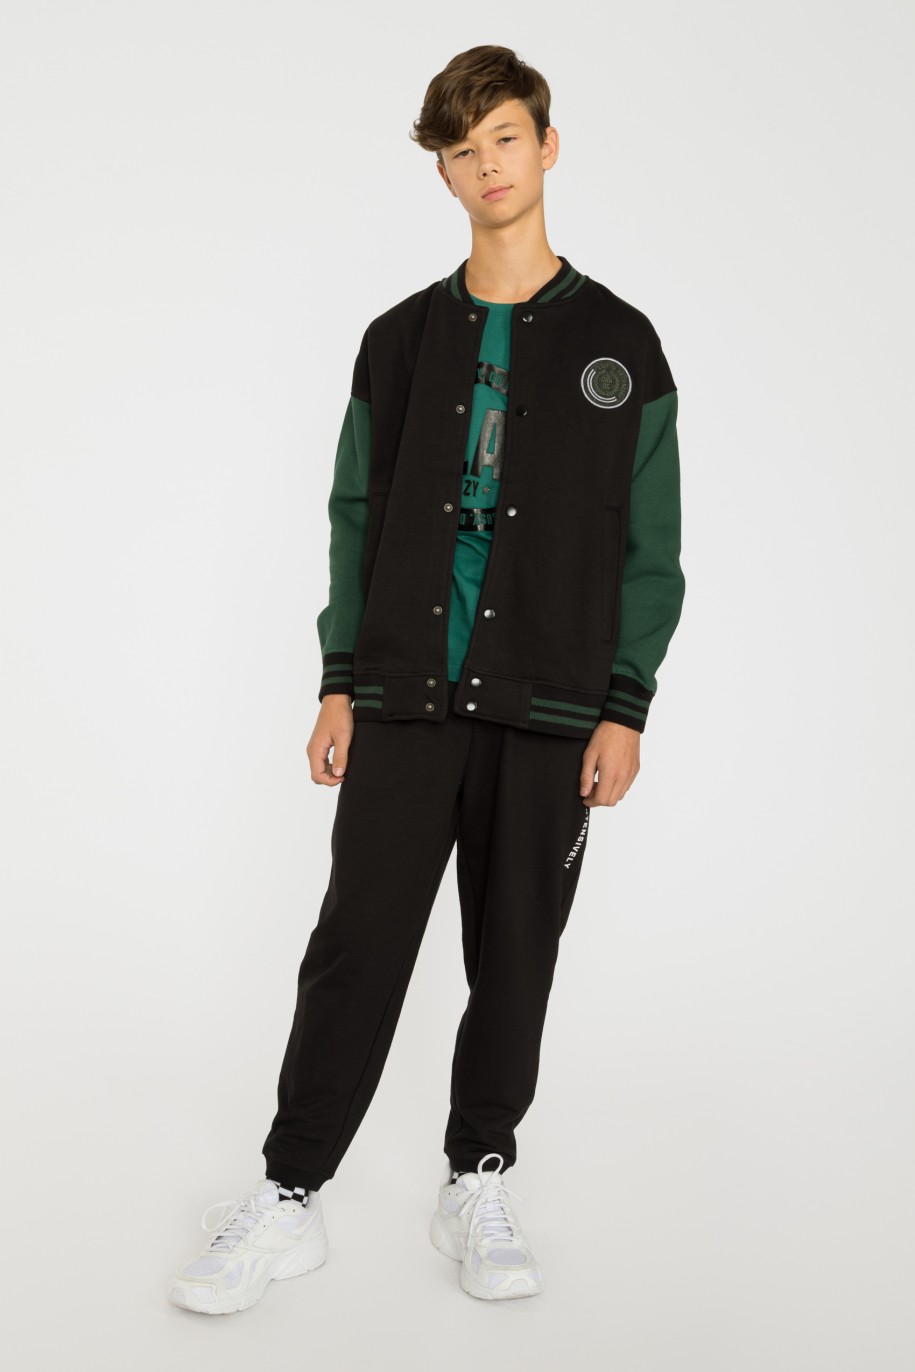 Czarna rozpinana bluza bejsbolówka z zielonymi rękawami - 37873